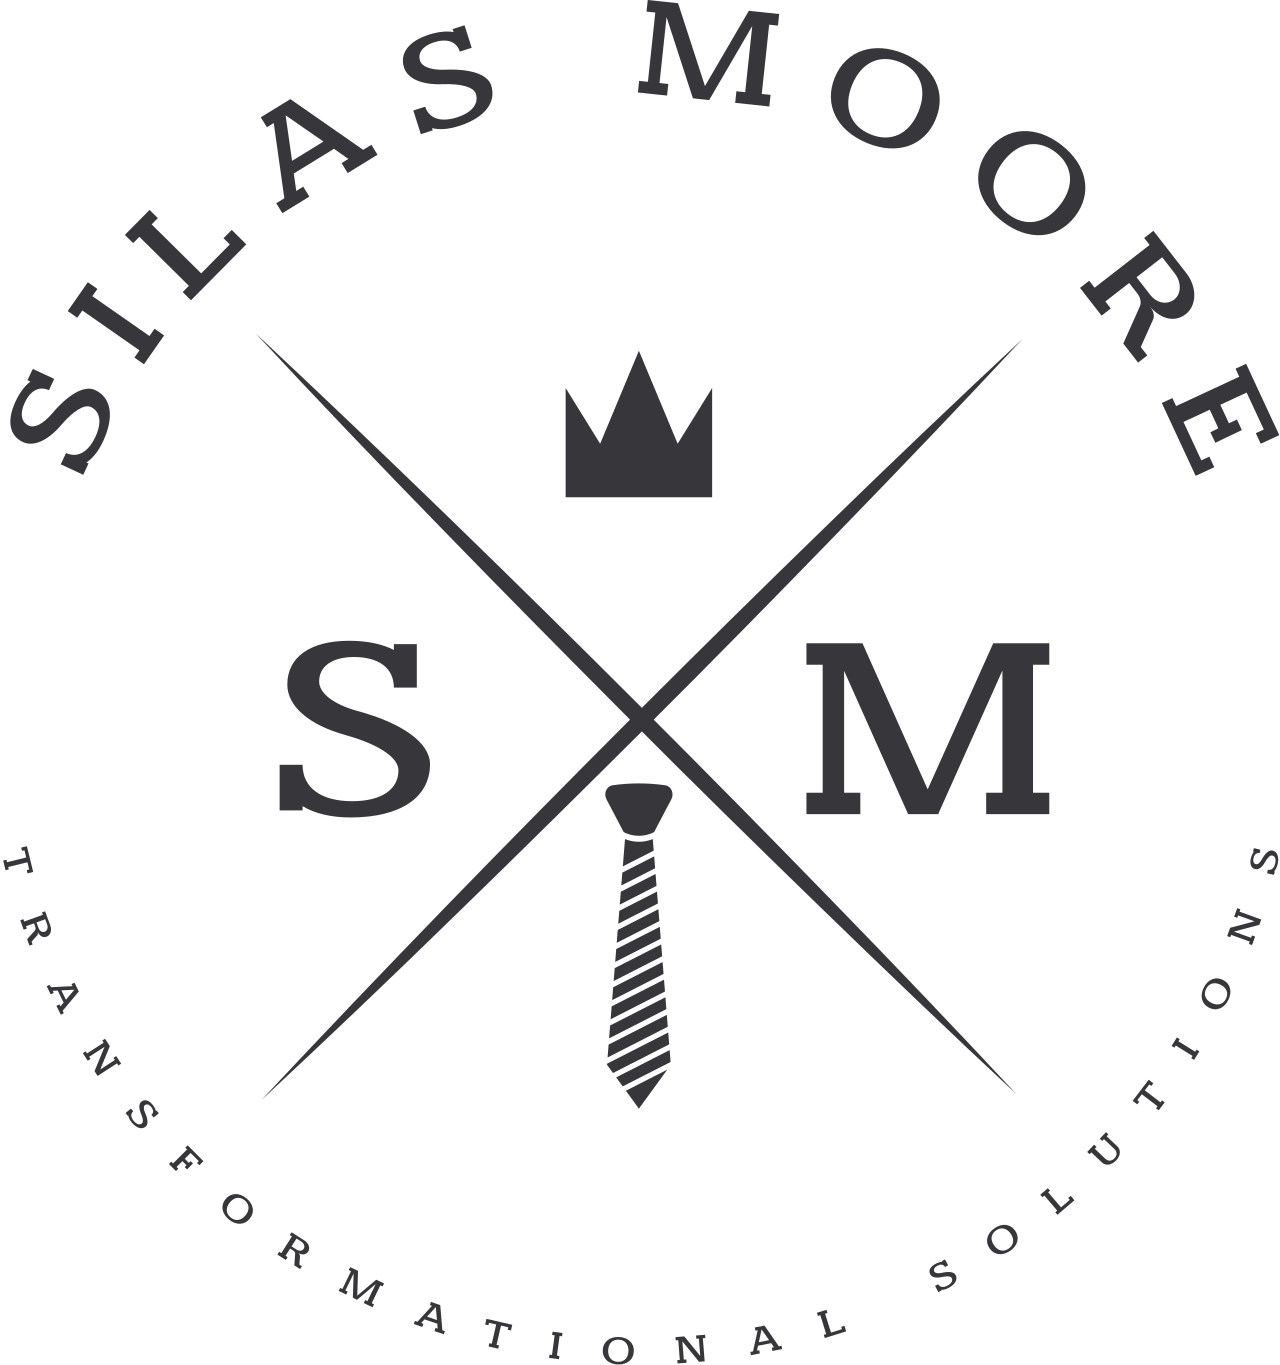 SILAS MOORE's logo